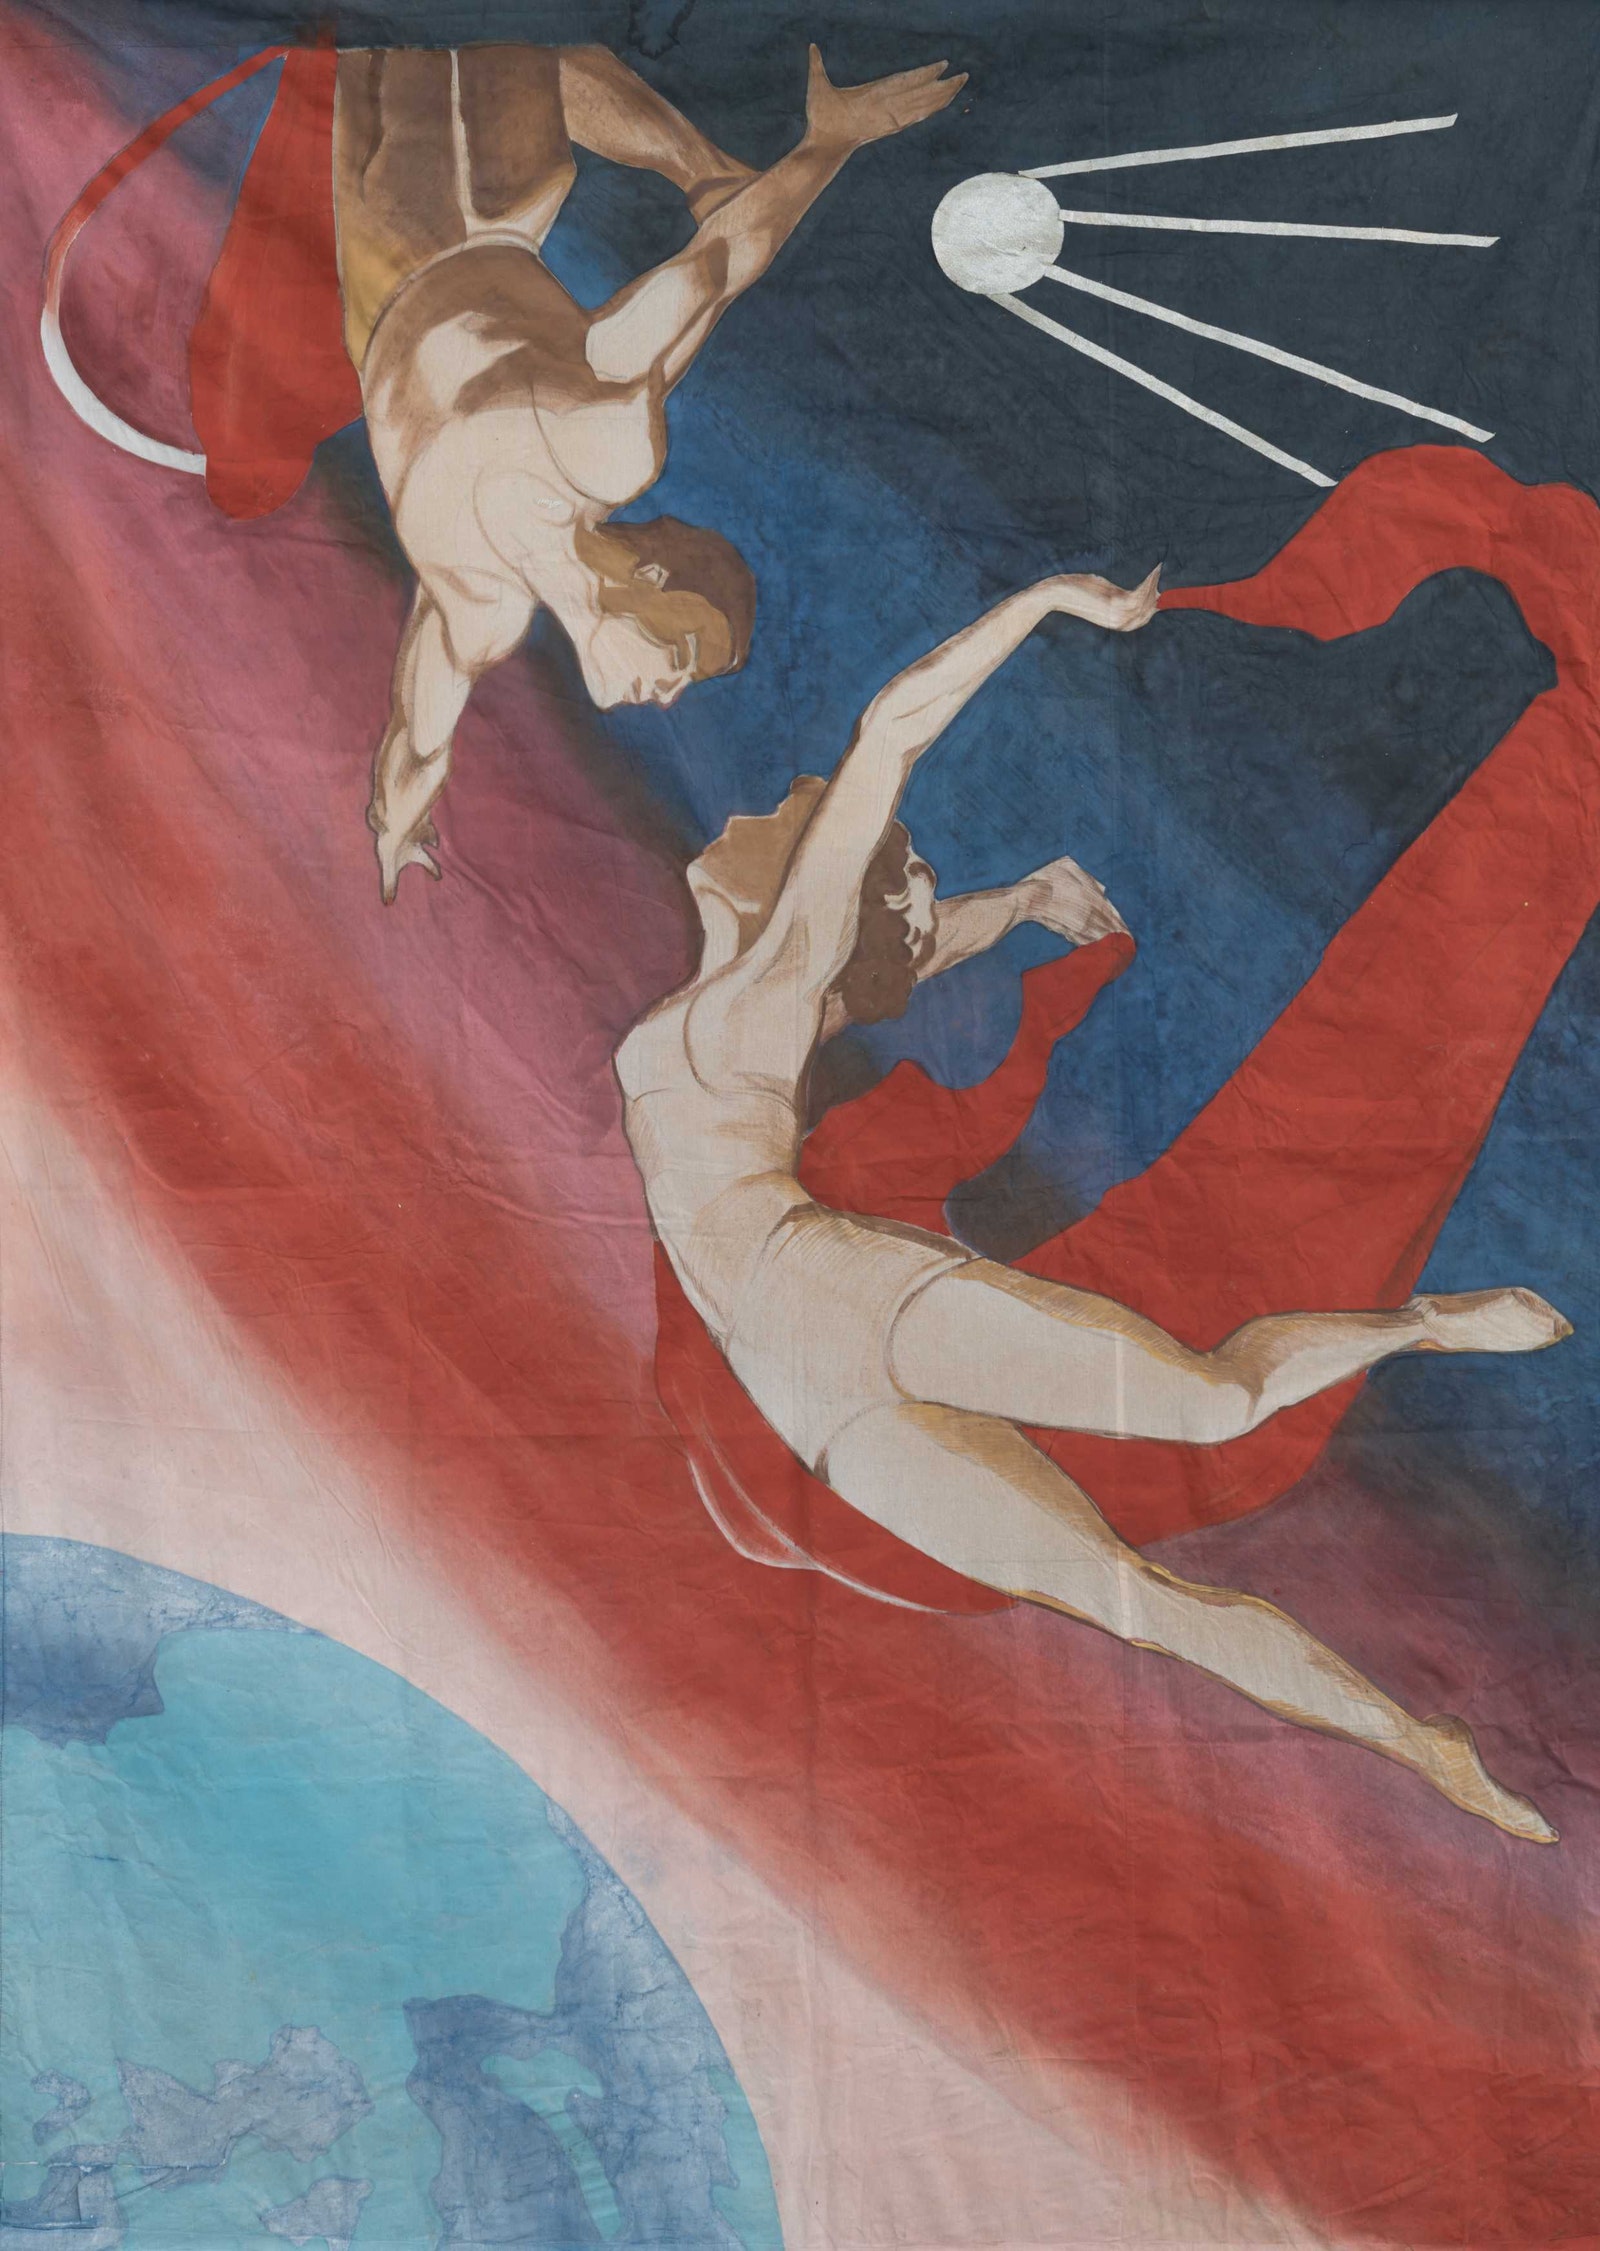 Андрей Щелоков. Афиша циркового номера с летающими гимнастами. 1998.